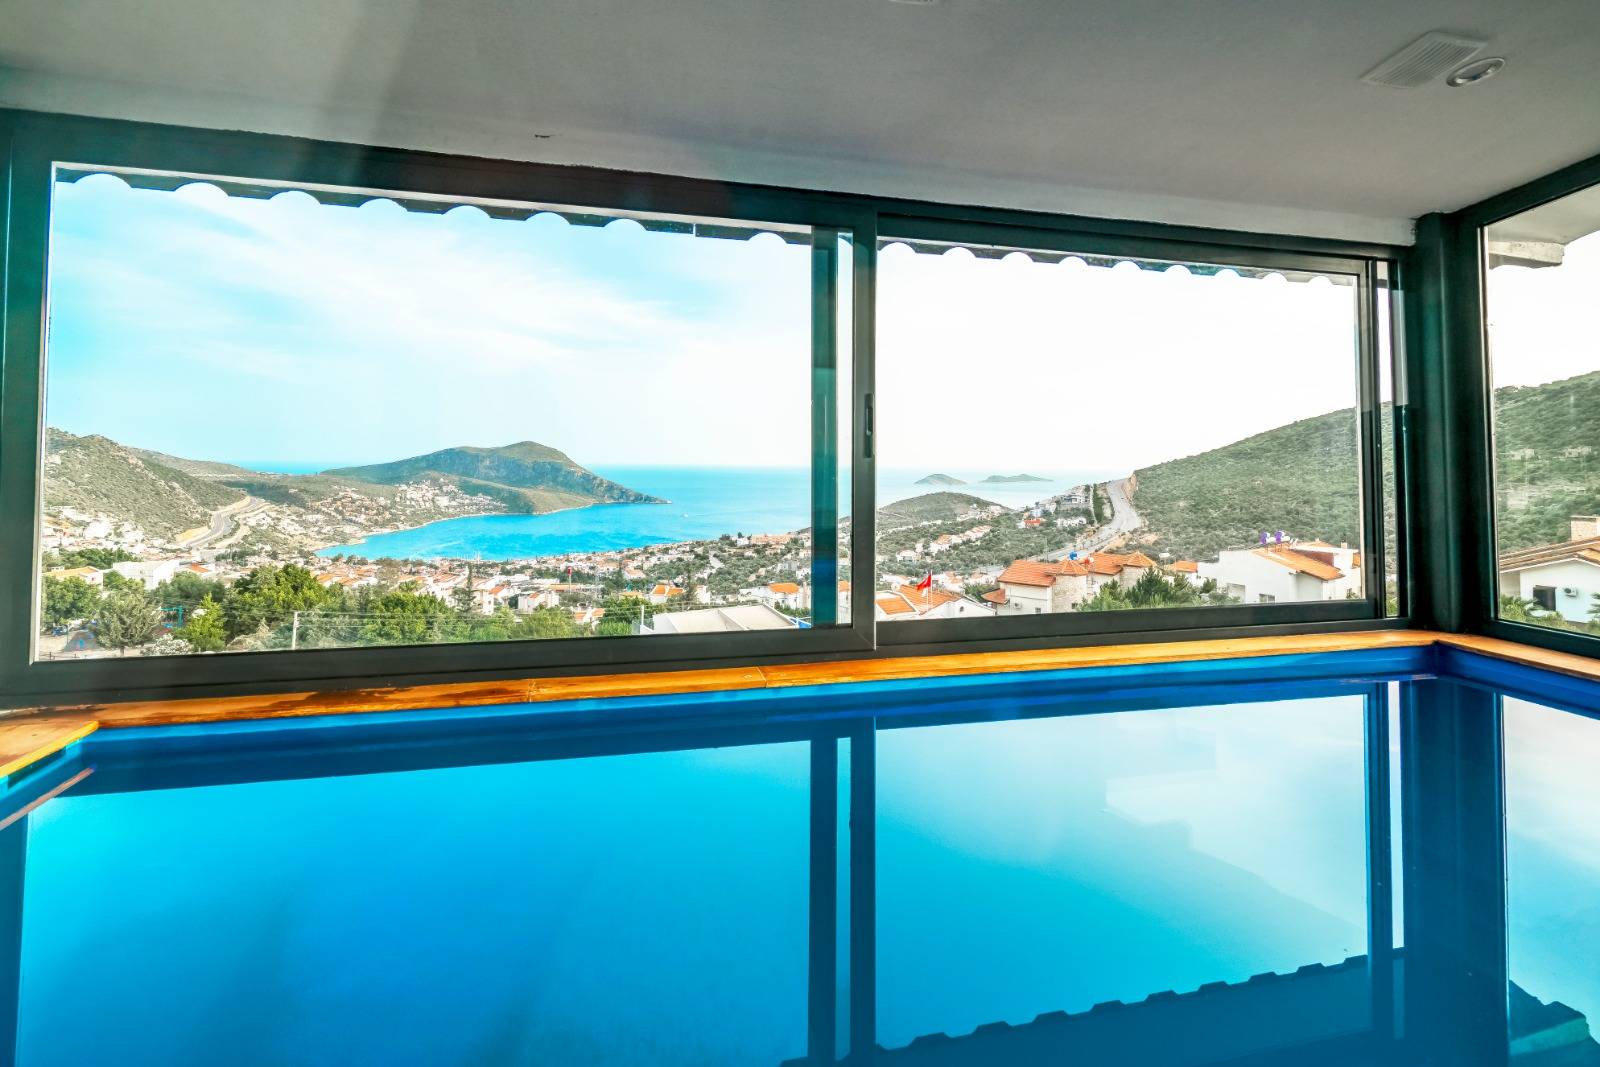 Kalkan Akbel'de Deniz Manzaralı, Özel ve Kapalı Havuzlu, Kiralık Balayı Villası